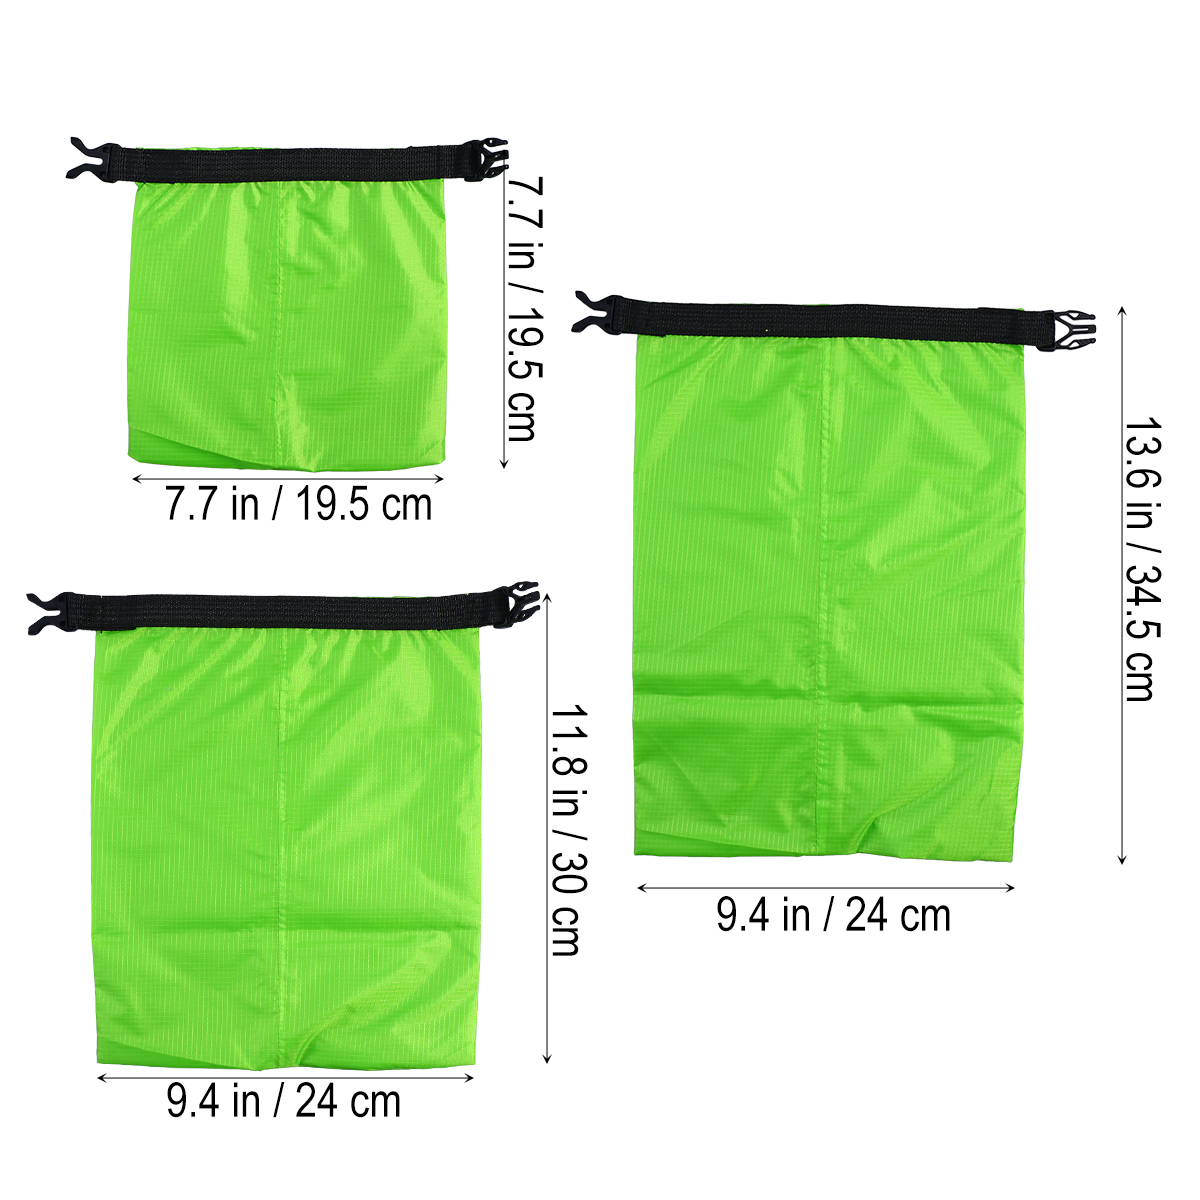 3 stk 1.5l+2.5l+3.5l vandtæt tørpose opbevaringspose til camping sejlads kajakrafting rafting fiskeri (grøn)